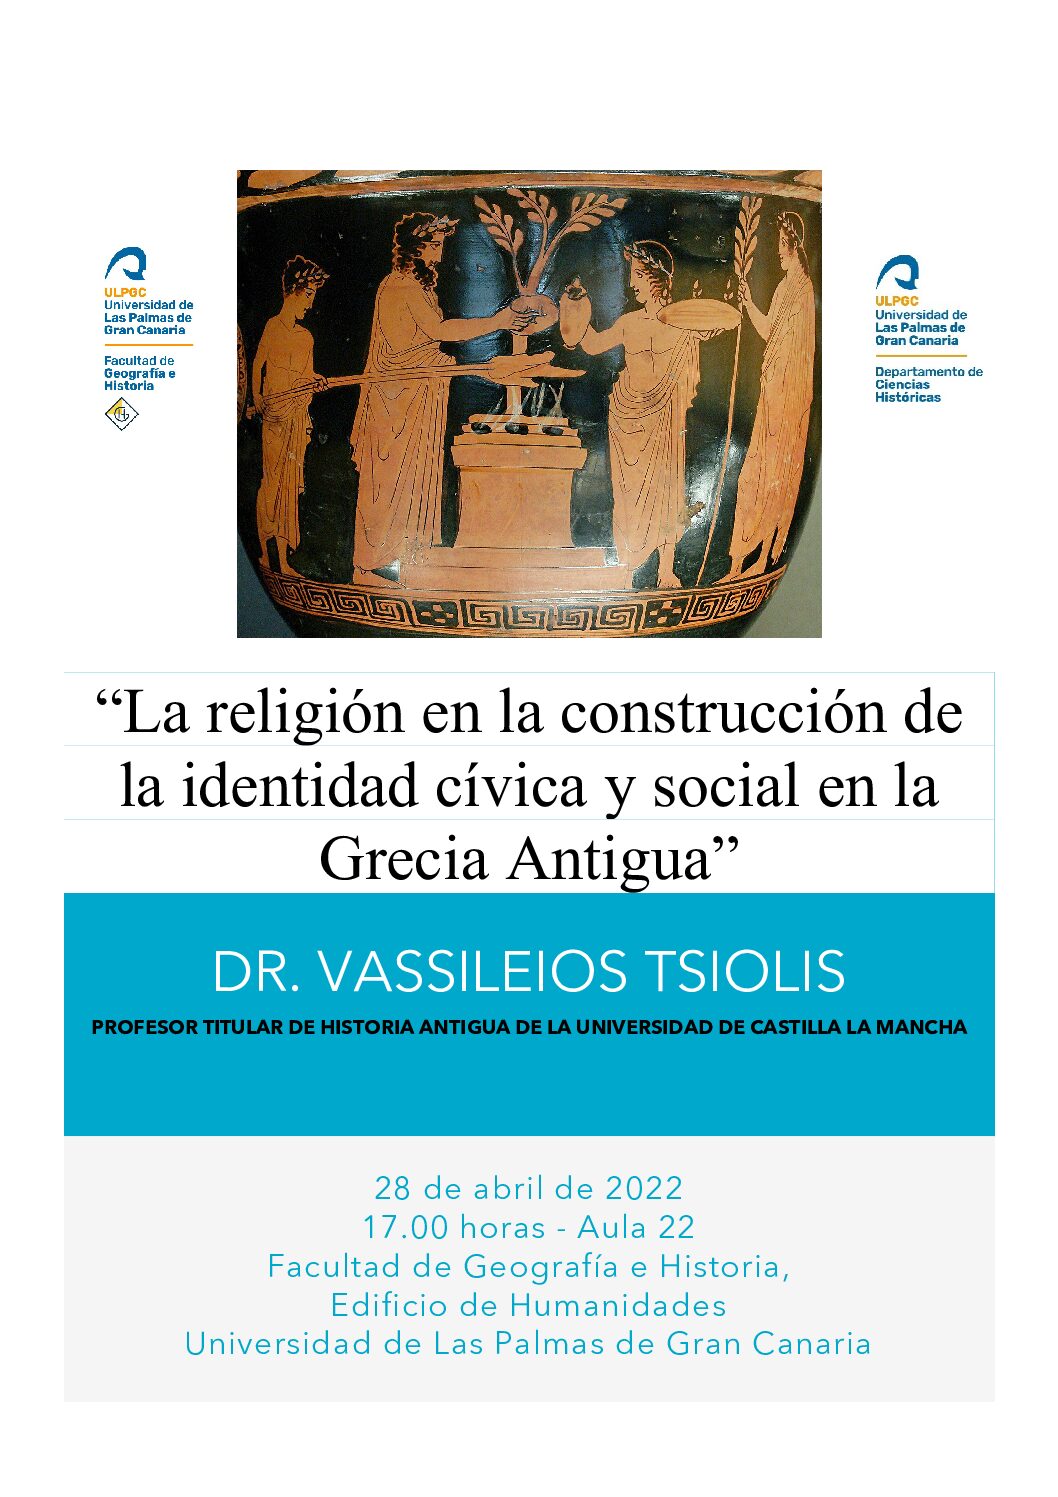 La religión en la construcción de la identidad cívica y social en la Grecia Antigua